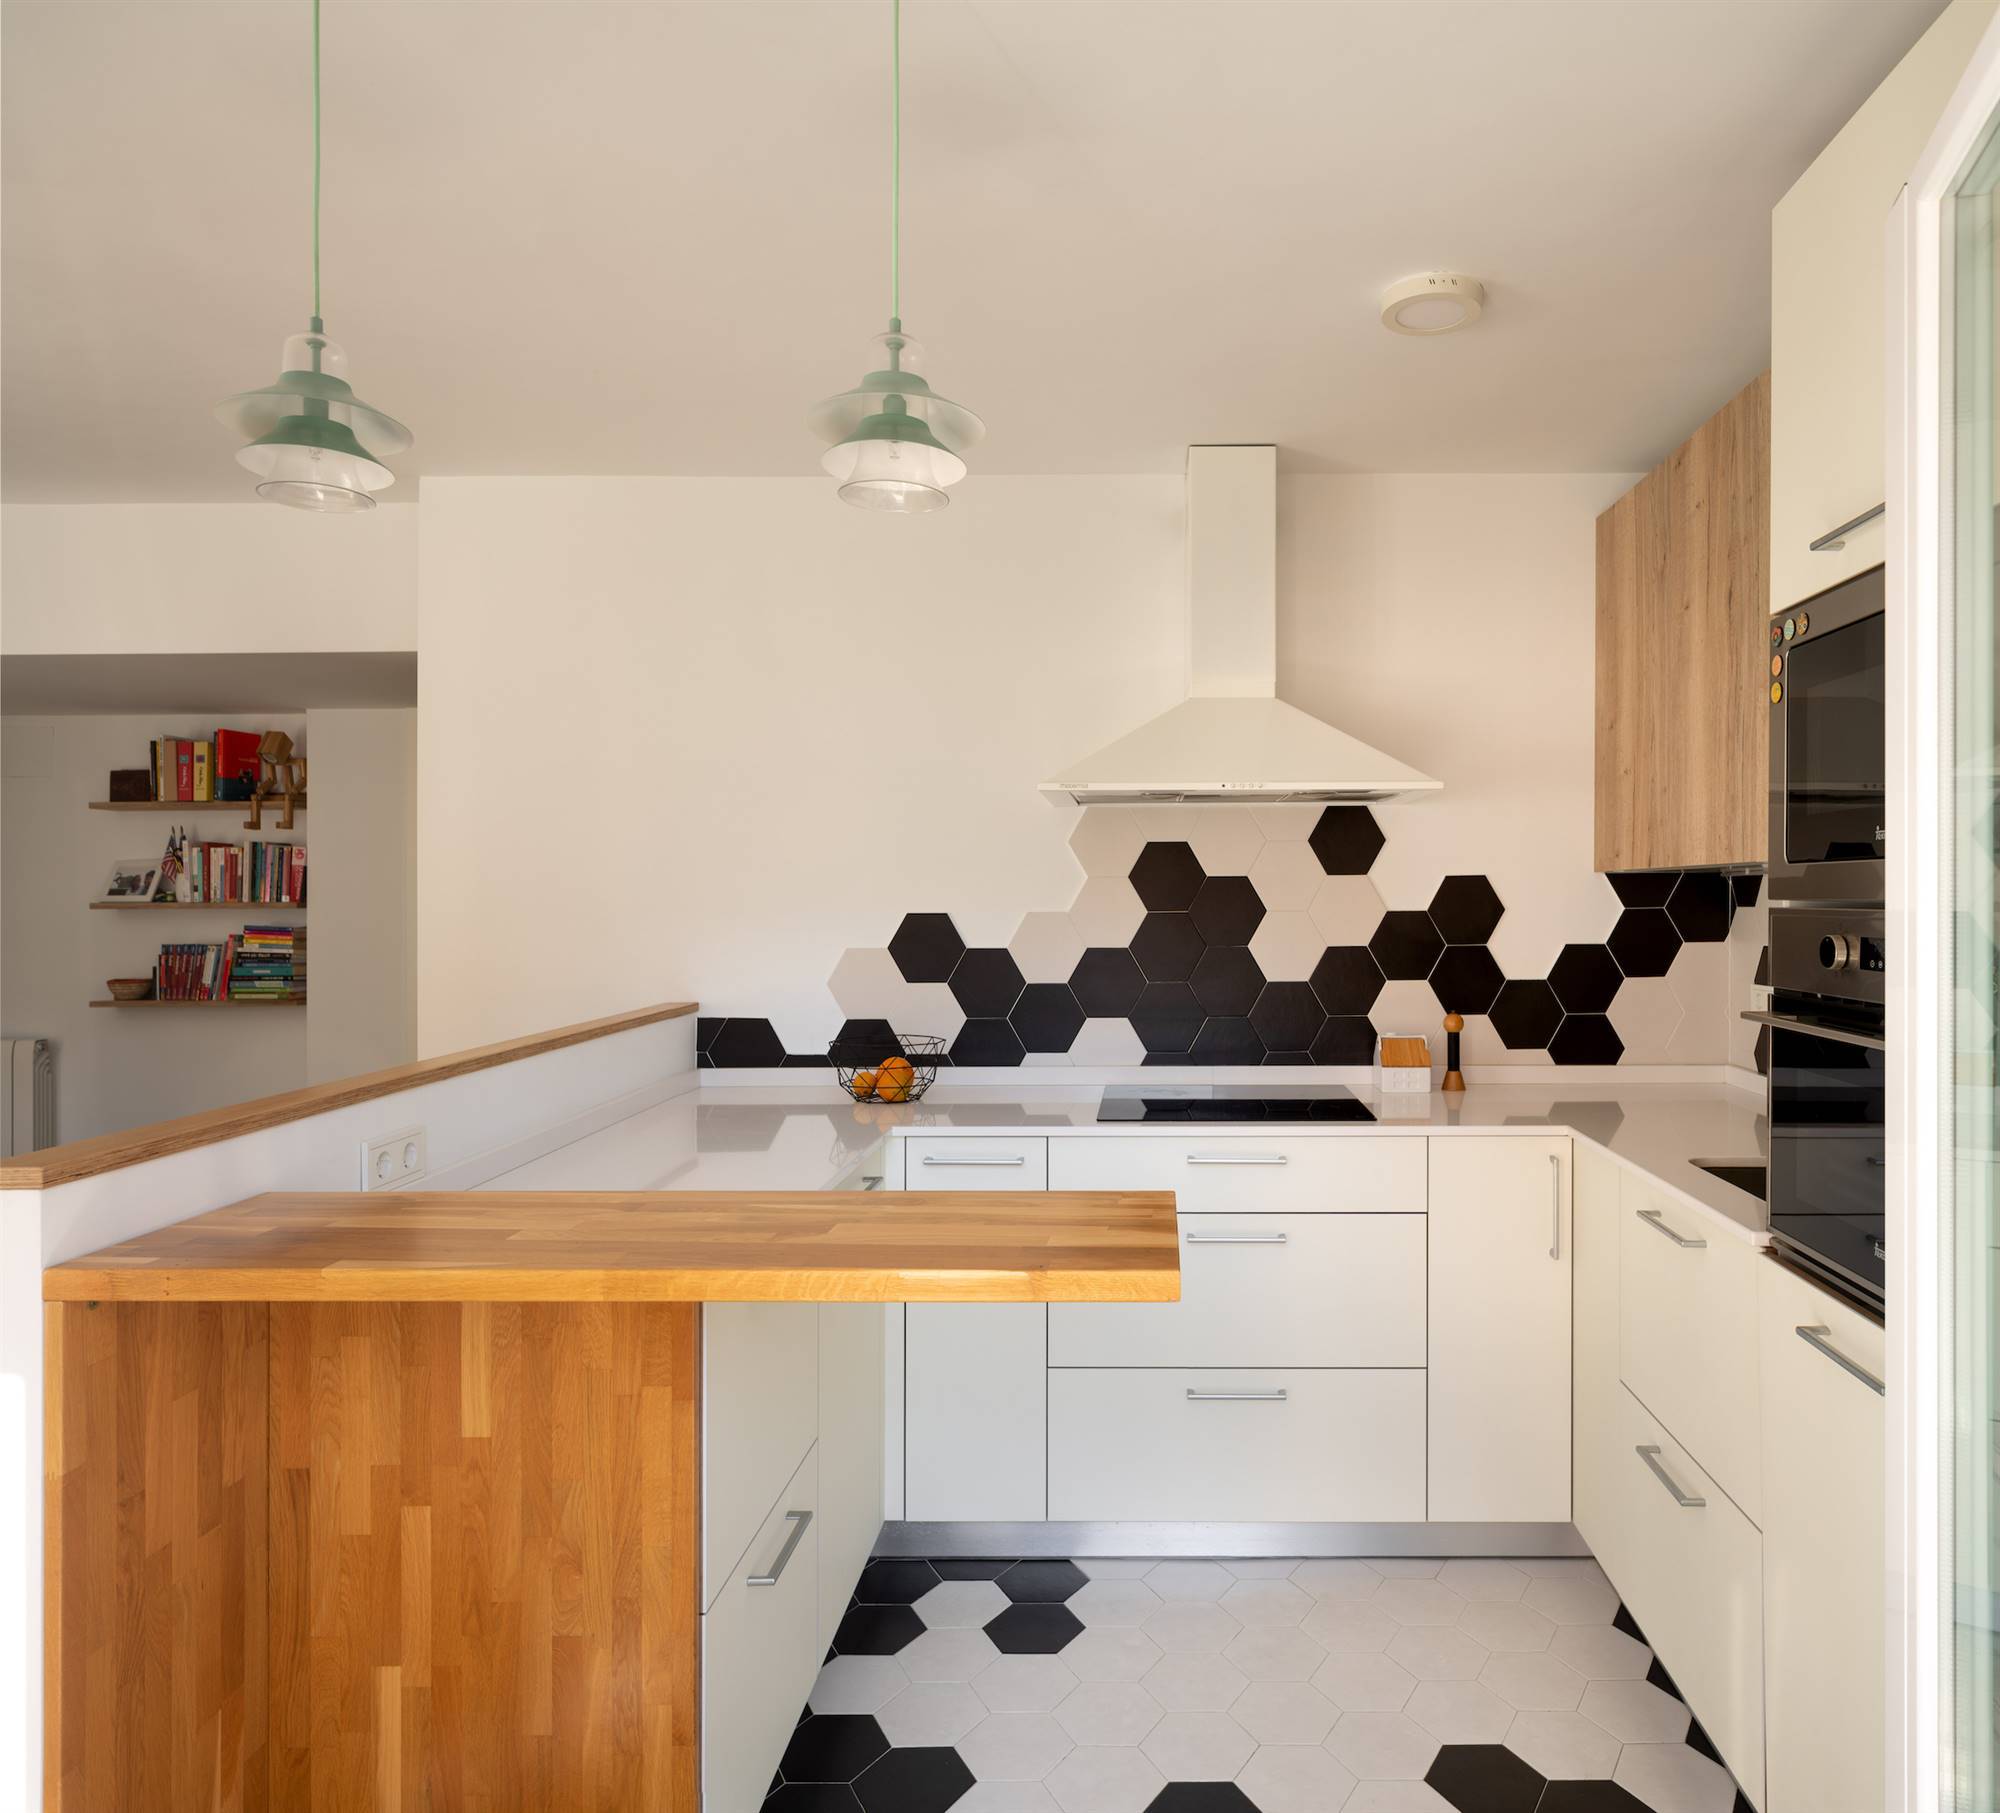 Una cocina moderna en forma de "U" con baldosas hexagonales en blanco y negro.